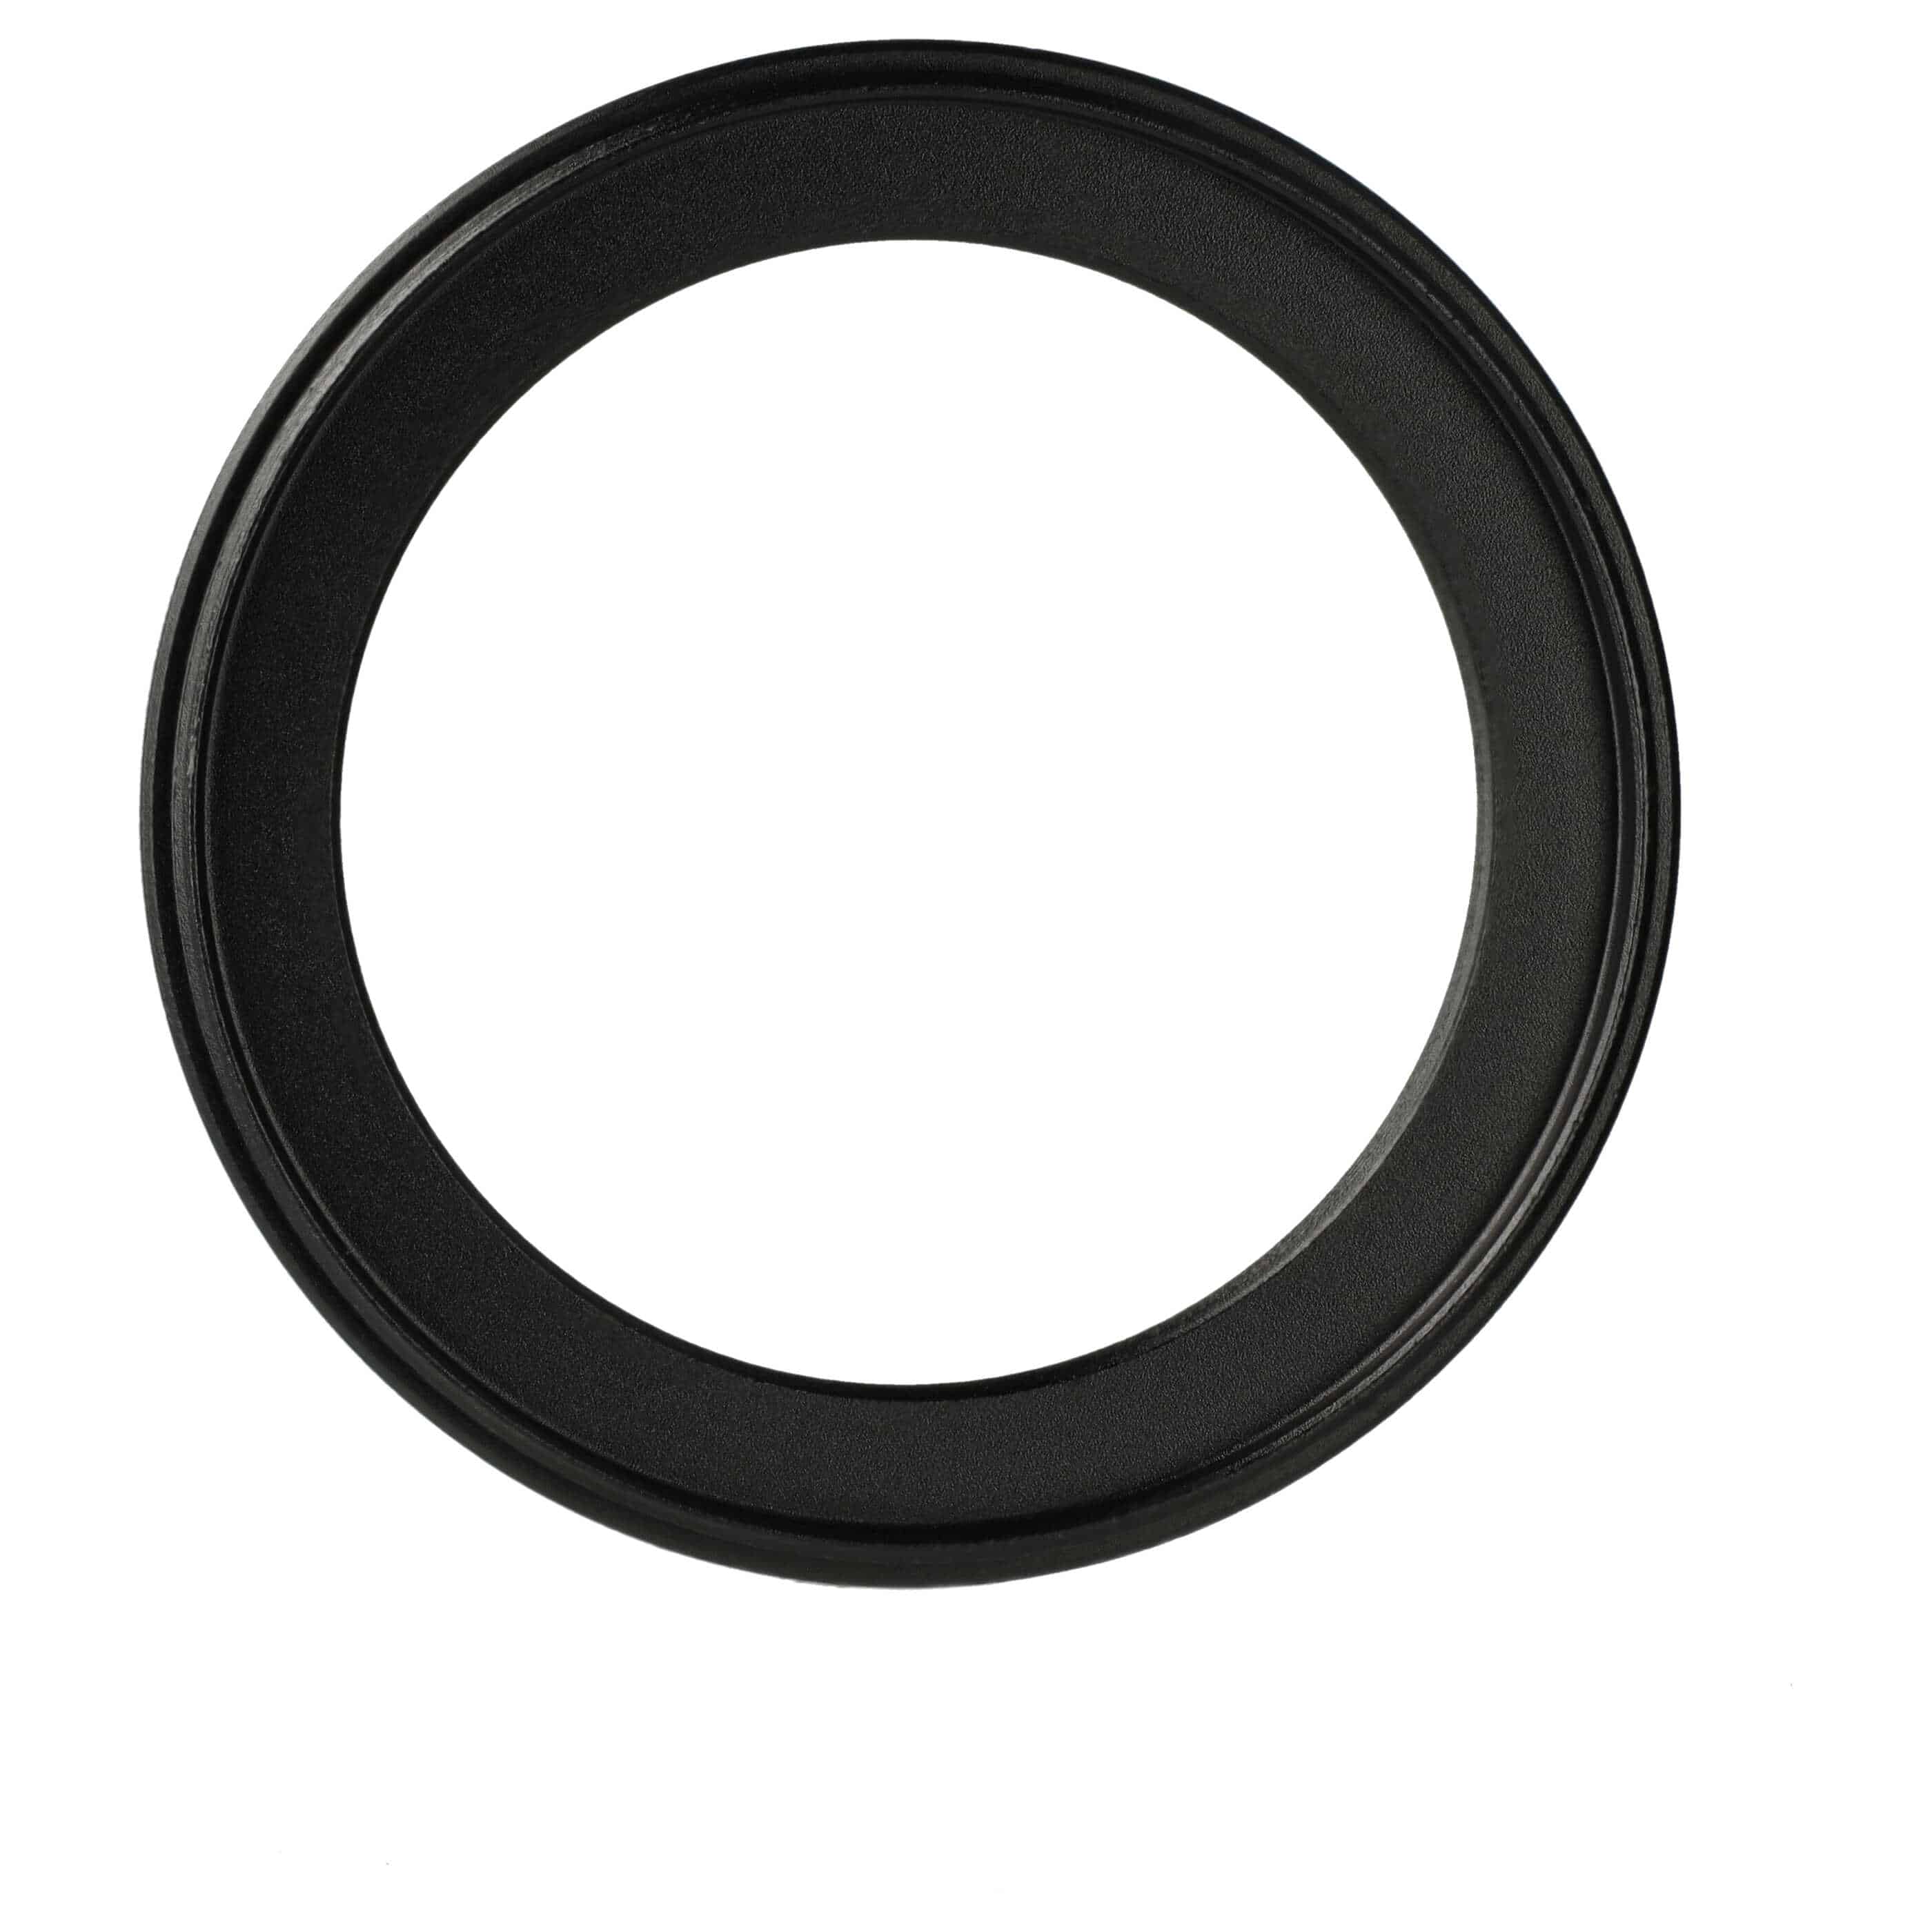 Step-Down-Ring Adapter von 67 mm auf 52 mm für diverse Kamera Objektive